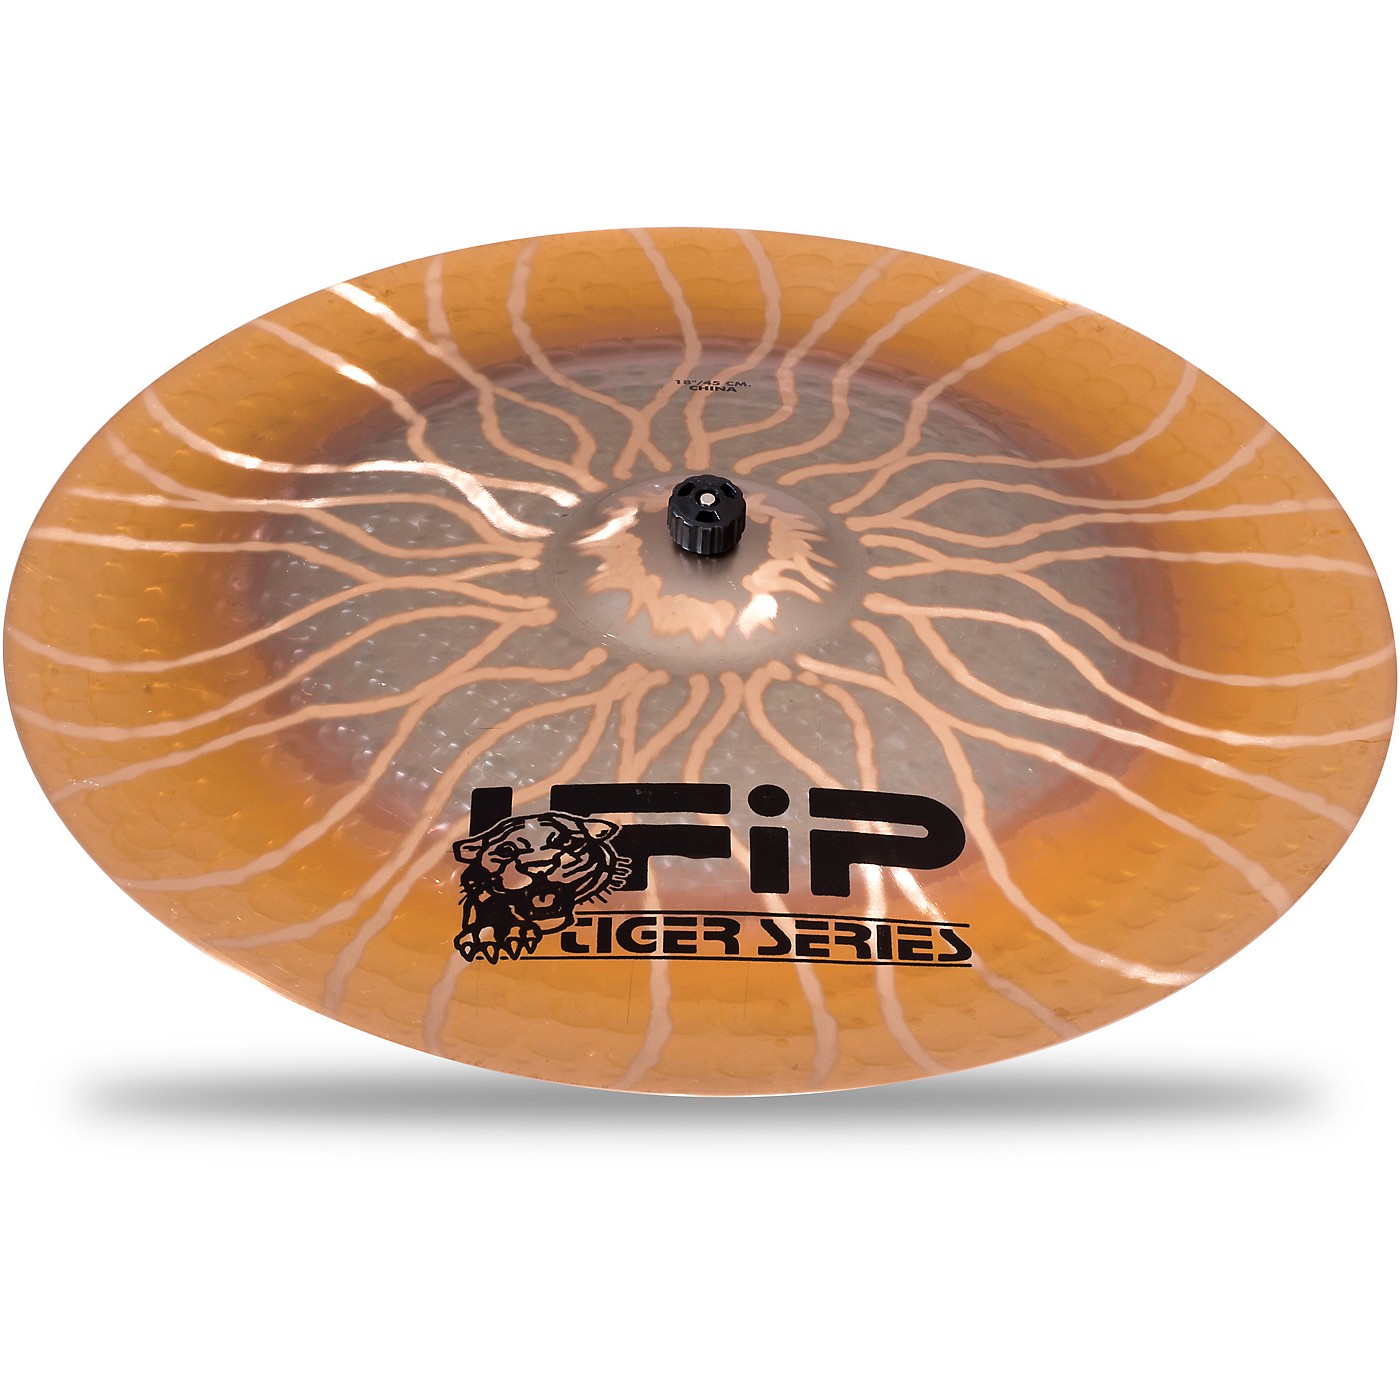 UFIP Tiger Series China Cymbal thumbnail